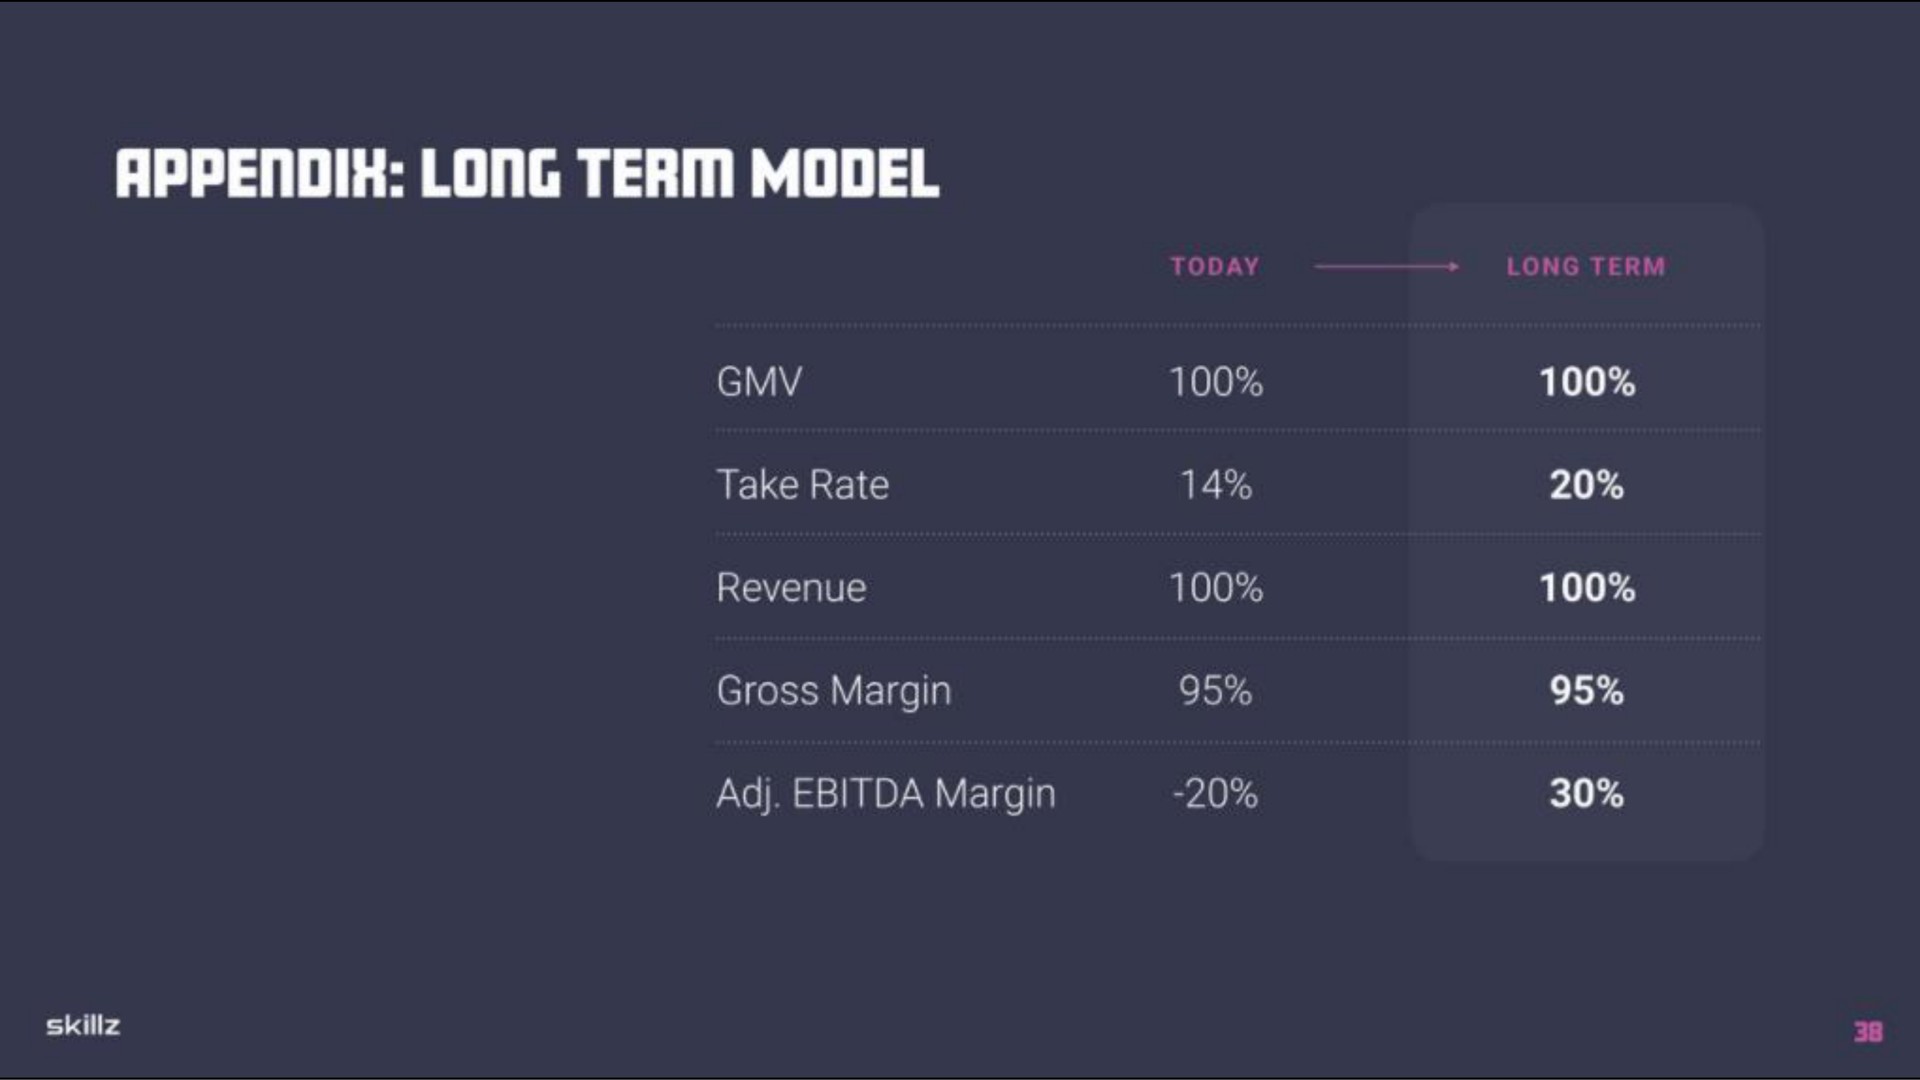 long term model ate gross margin margin sty bite | Skillz